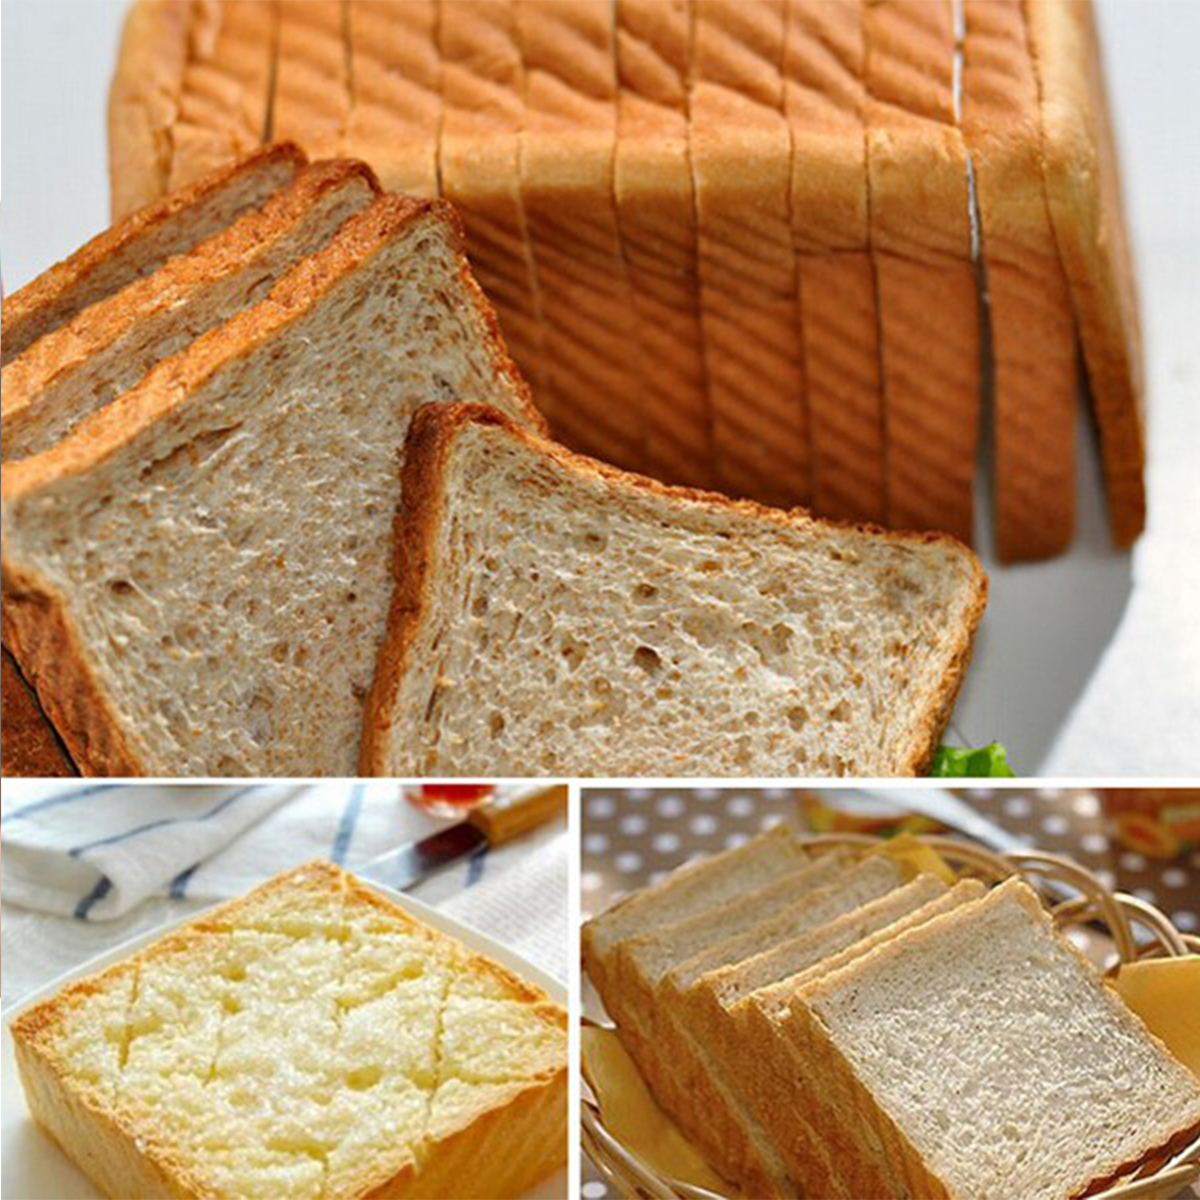 Practical-Kitchen-Bread-Loaf-Toast-Slicer-Cutter-Maker-Mold-Guide-Slicing-Tools-1695112-5